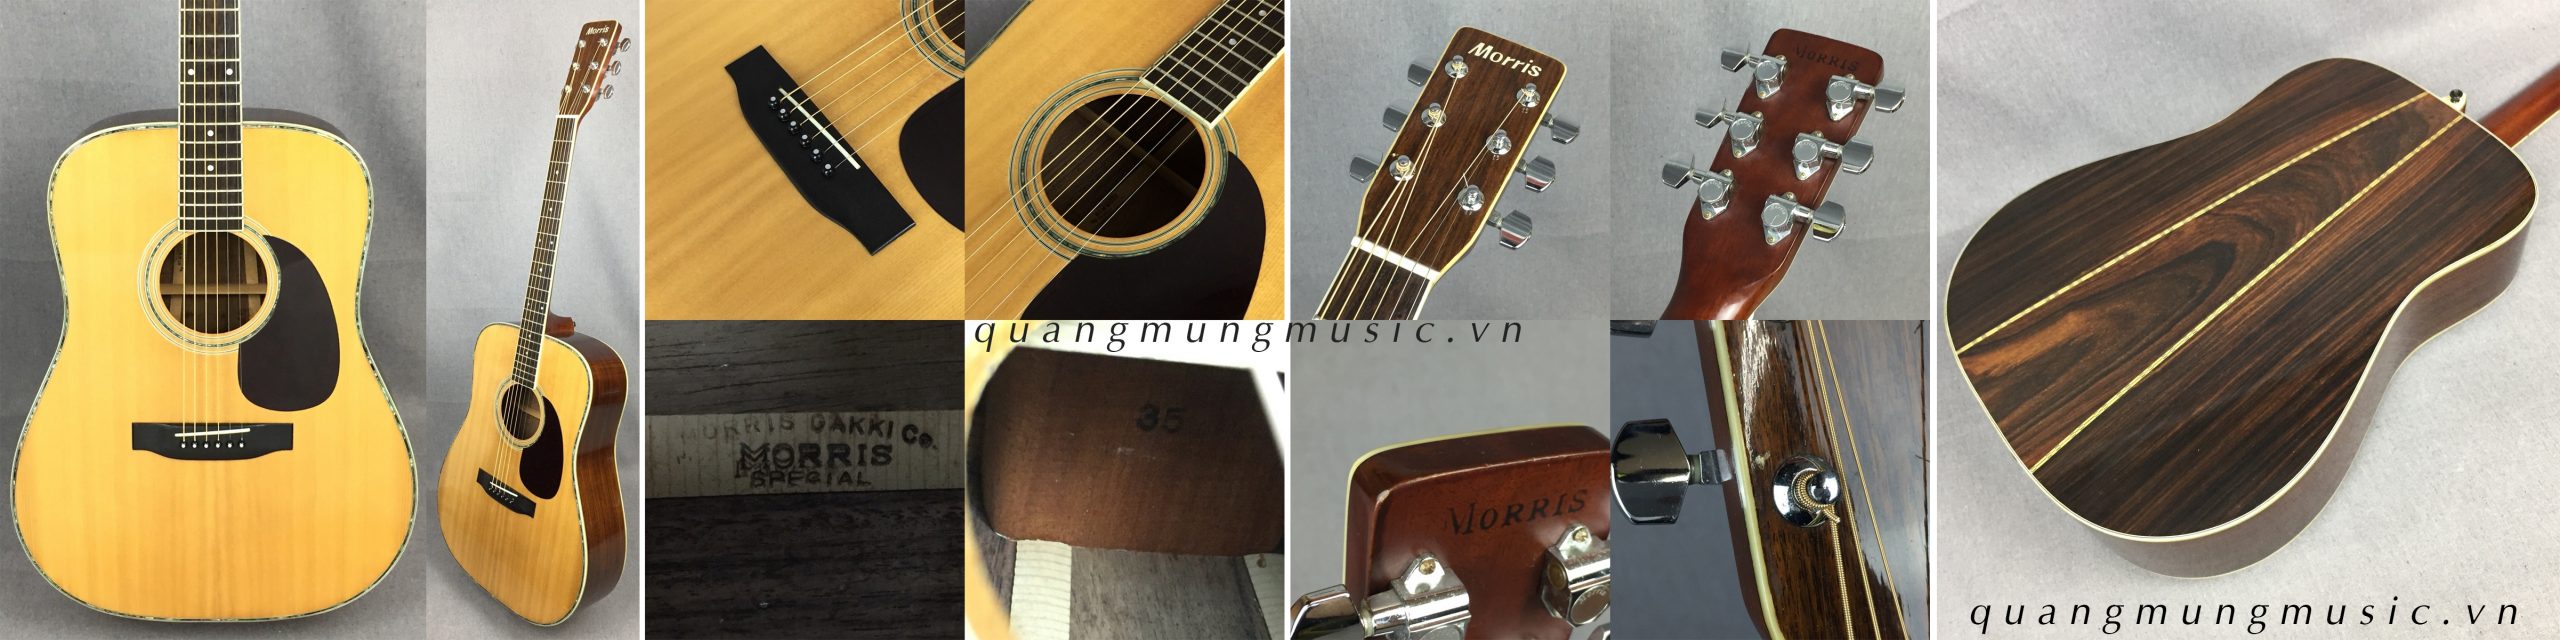 dan-guitar-acoustic-morris-w35